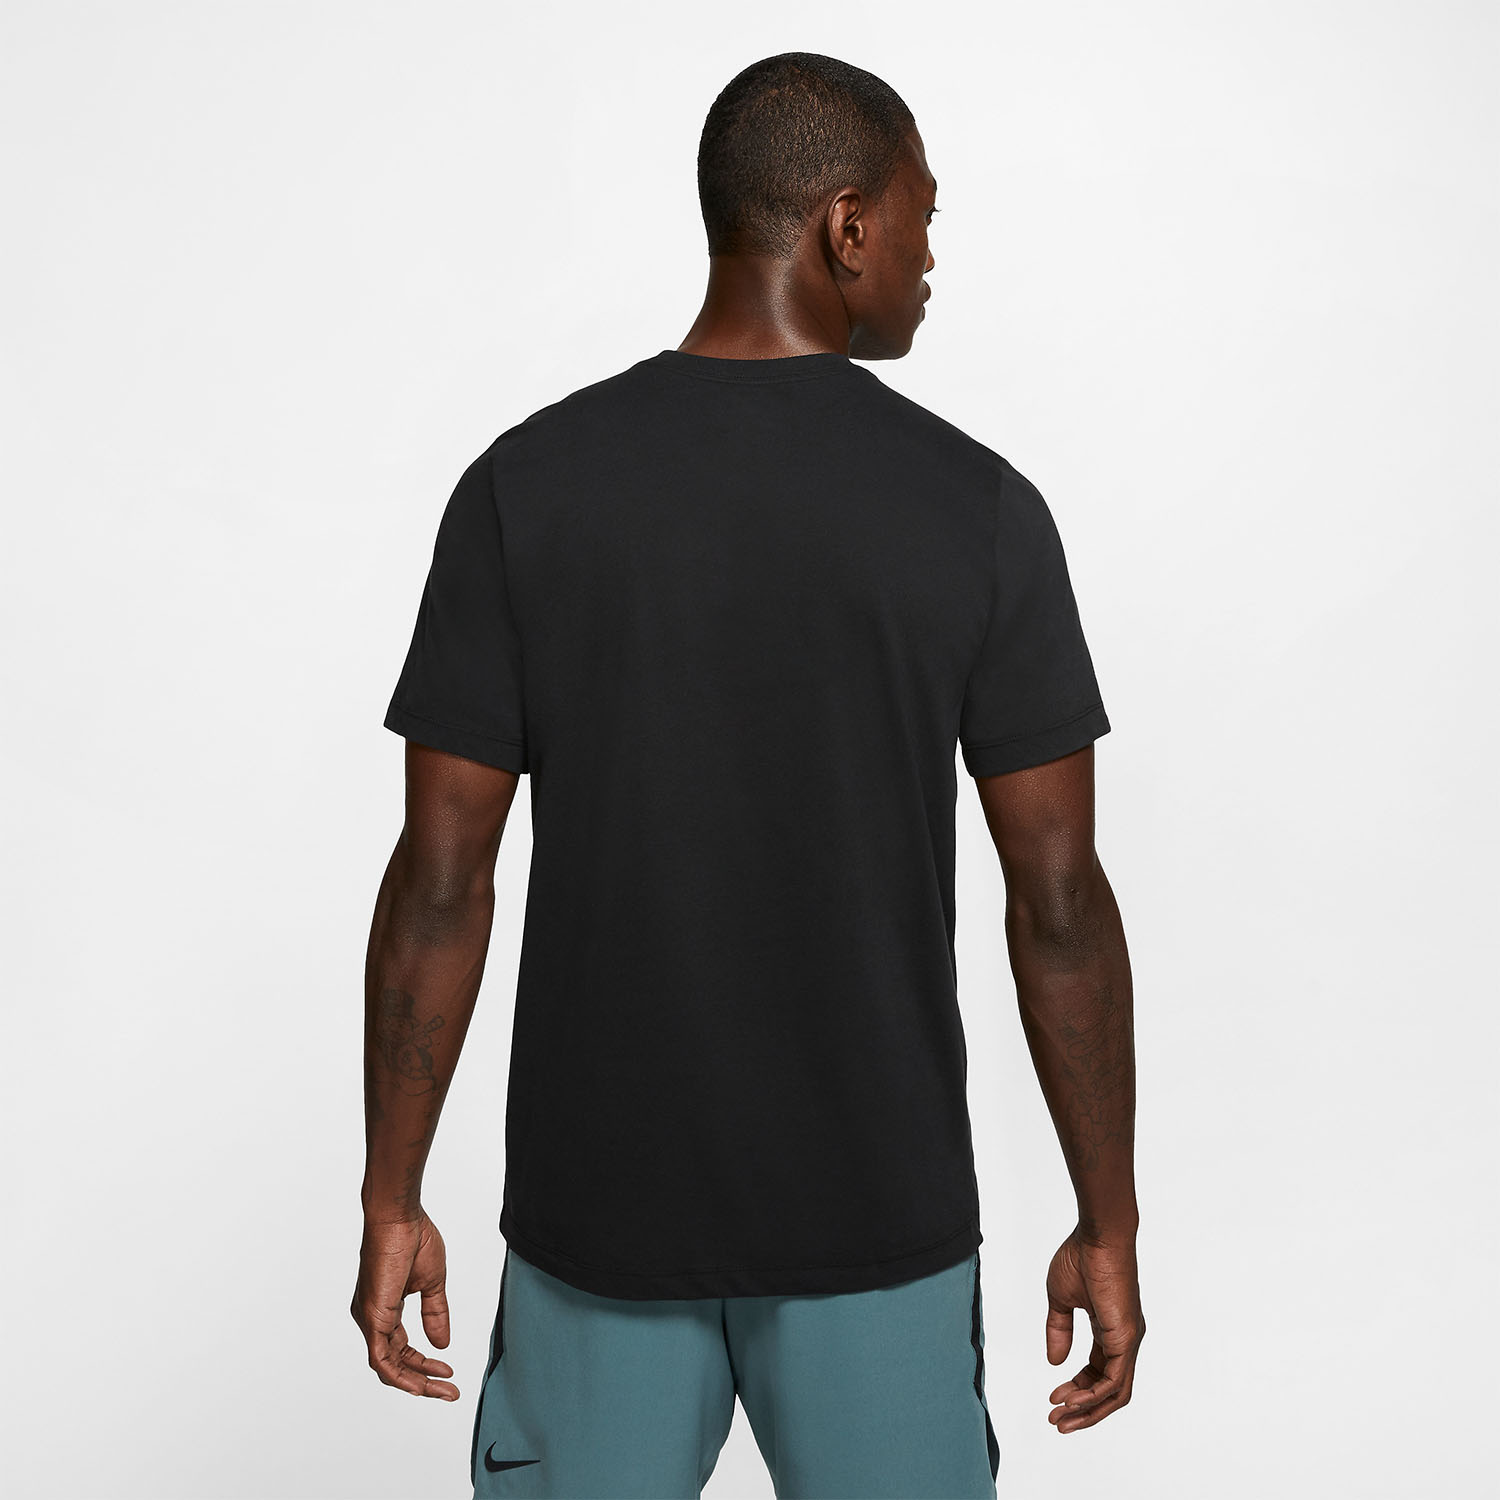 Nike Dri-FIT Swoosh Logo Men's Training T-Shirt - Black/White